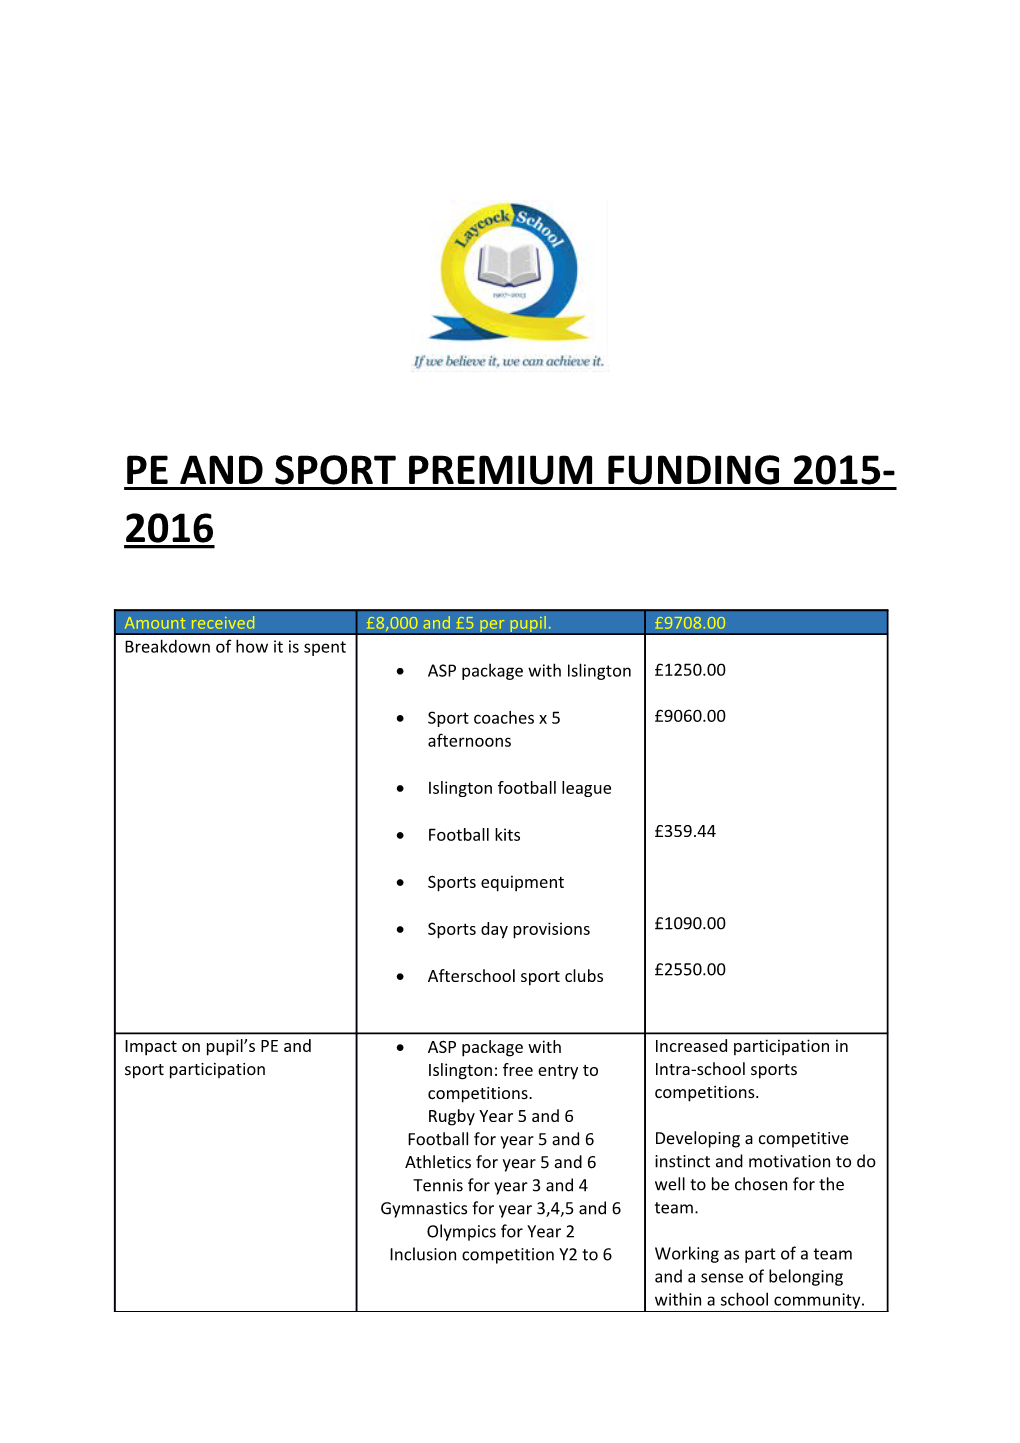 Pe and Sport Premium Funding 2015- 2016